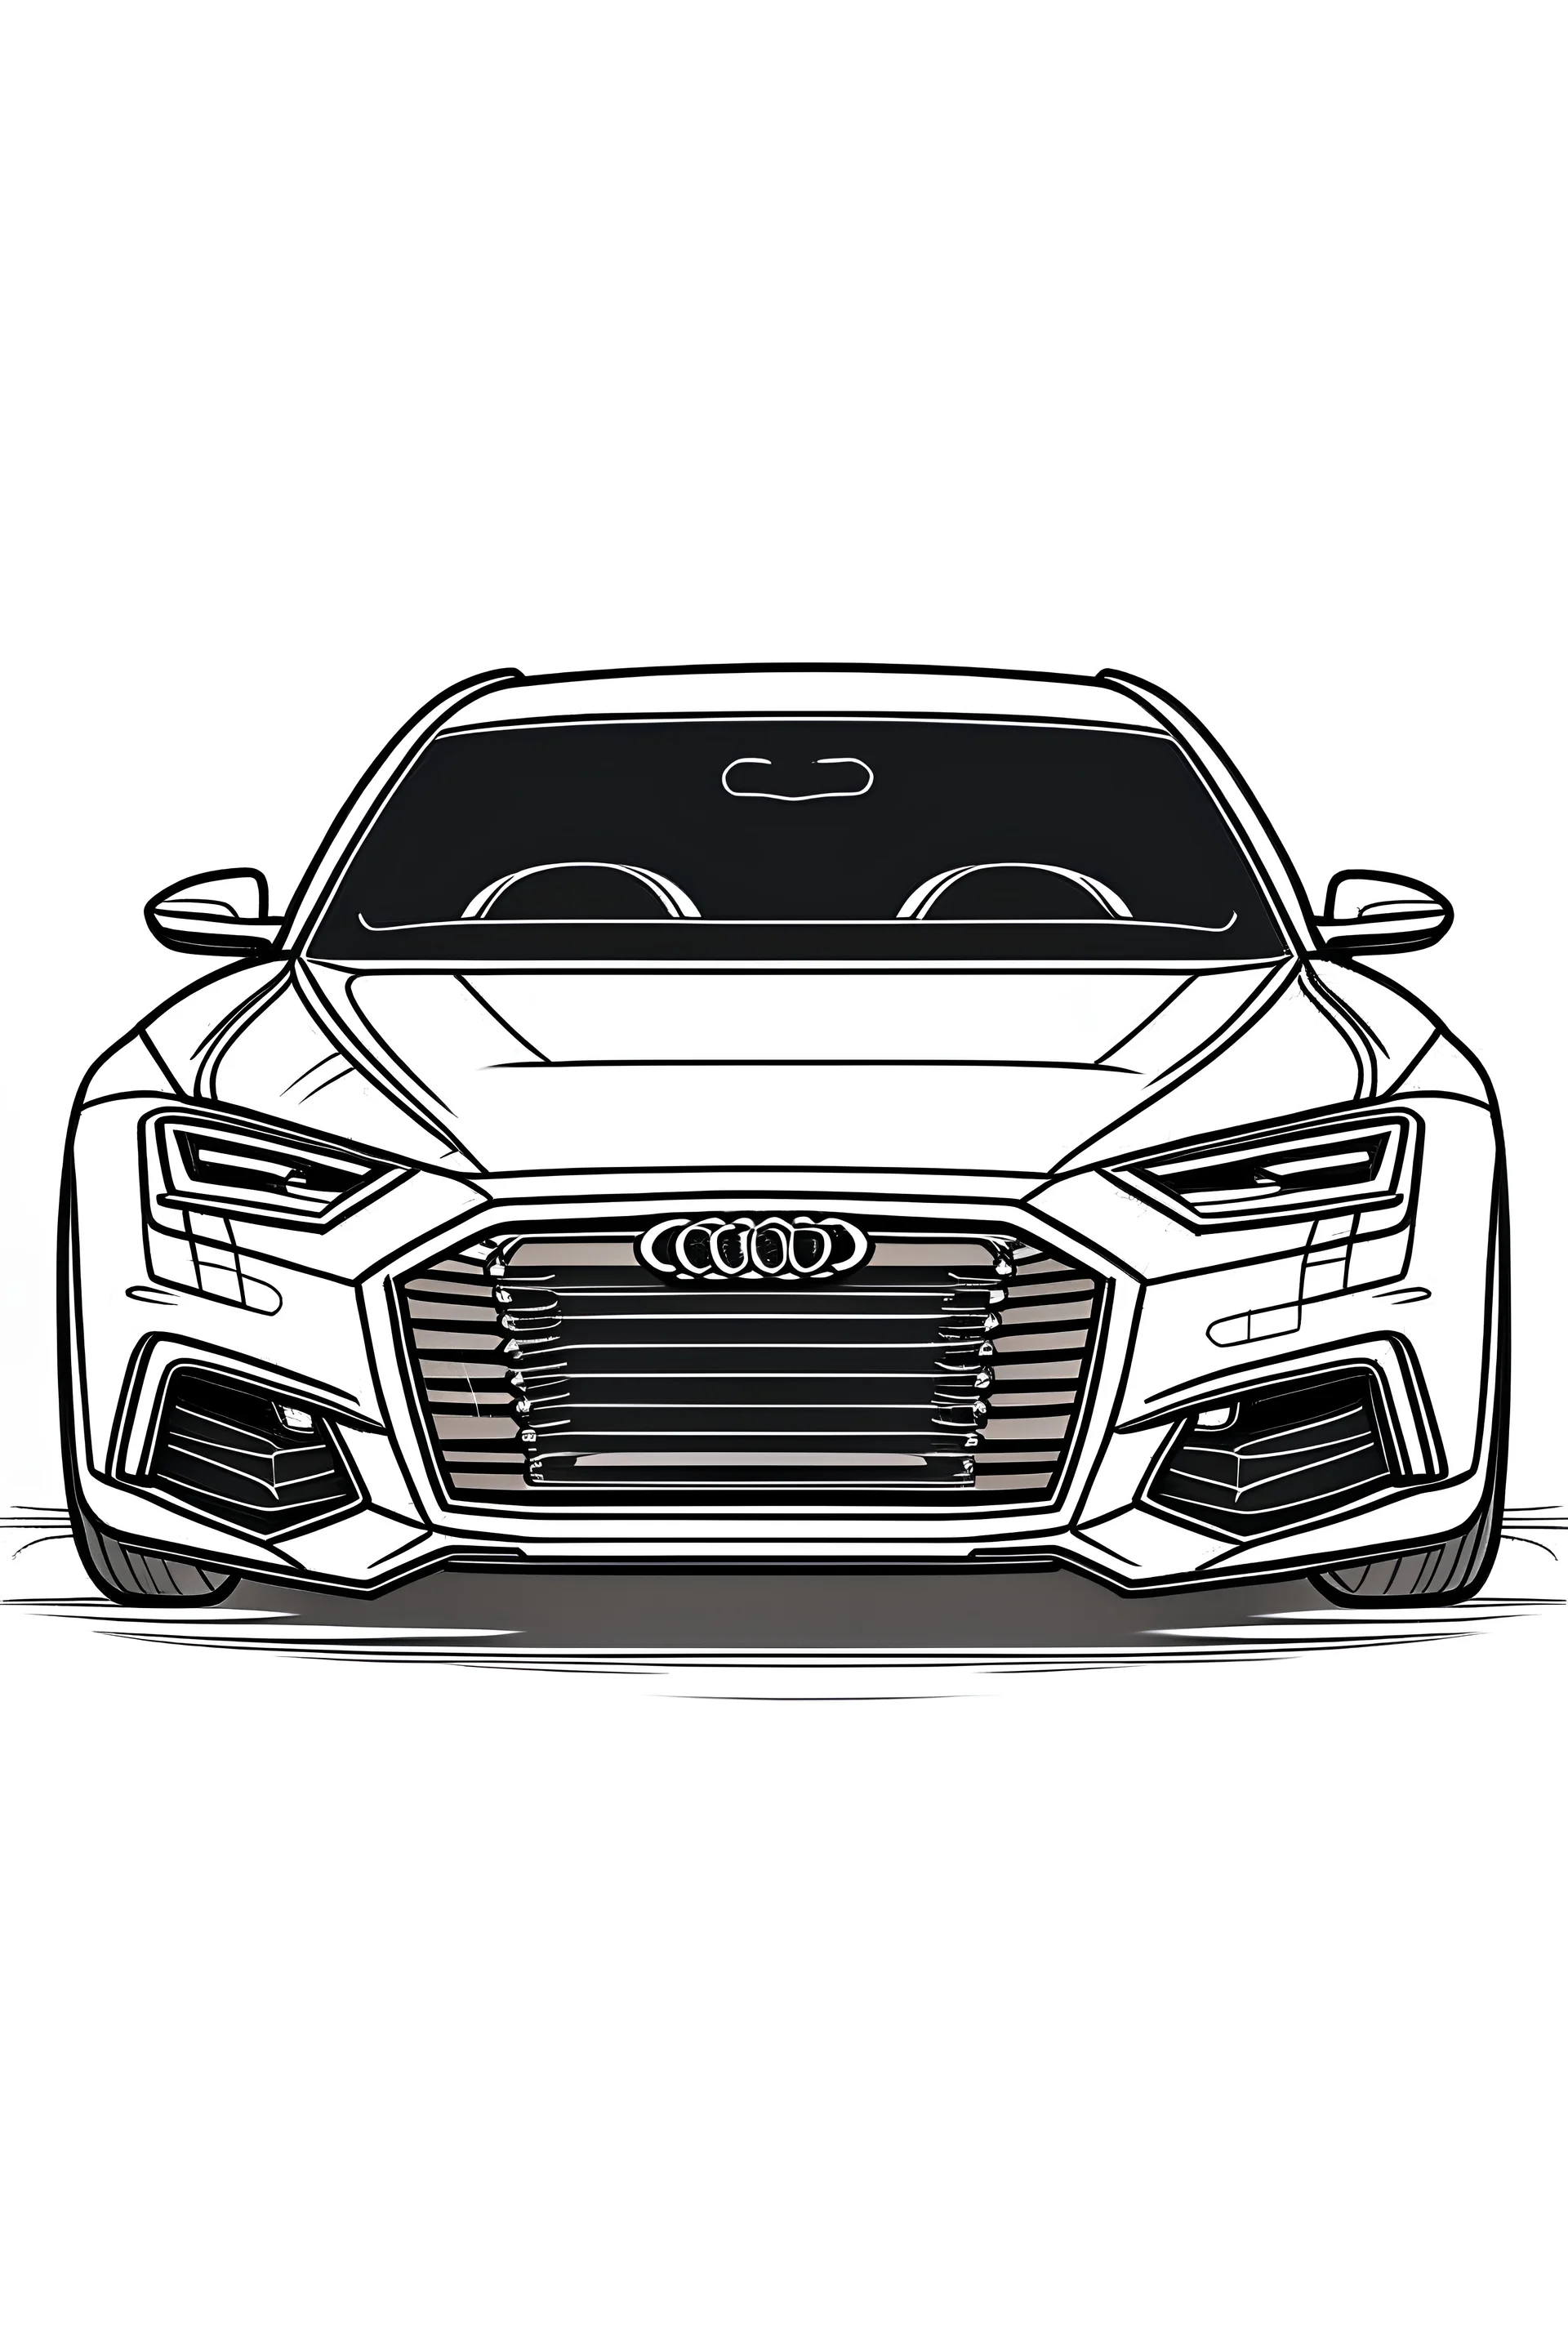 Q7 Audi Cars Coloring Pages : Bulk Color